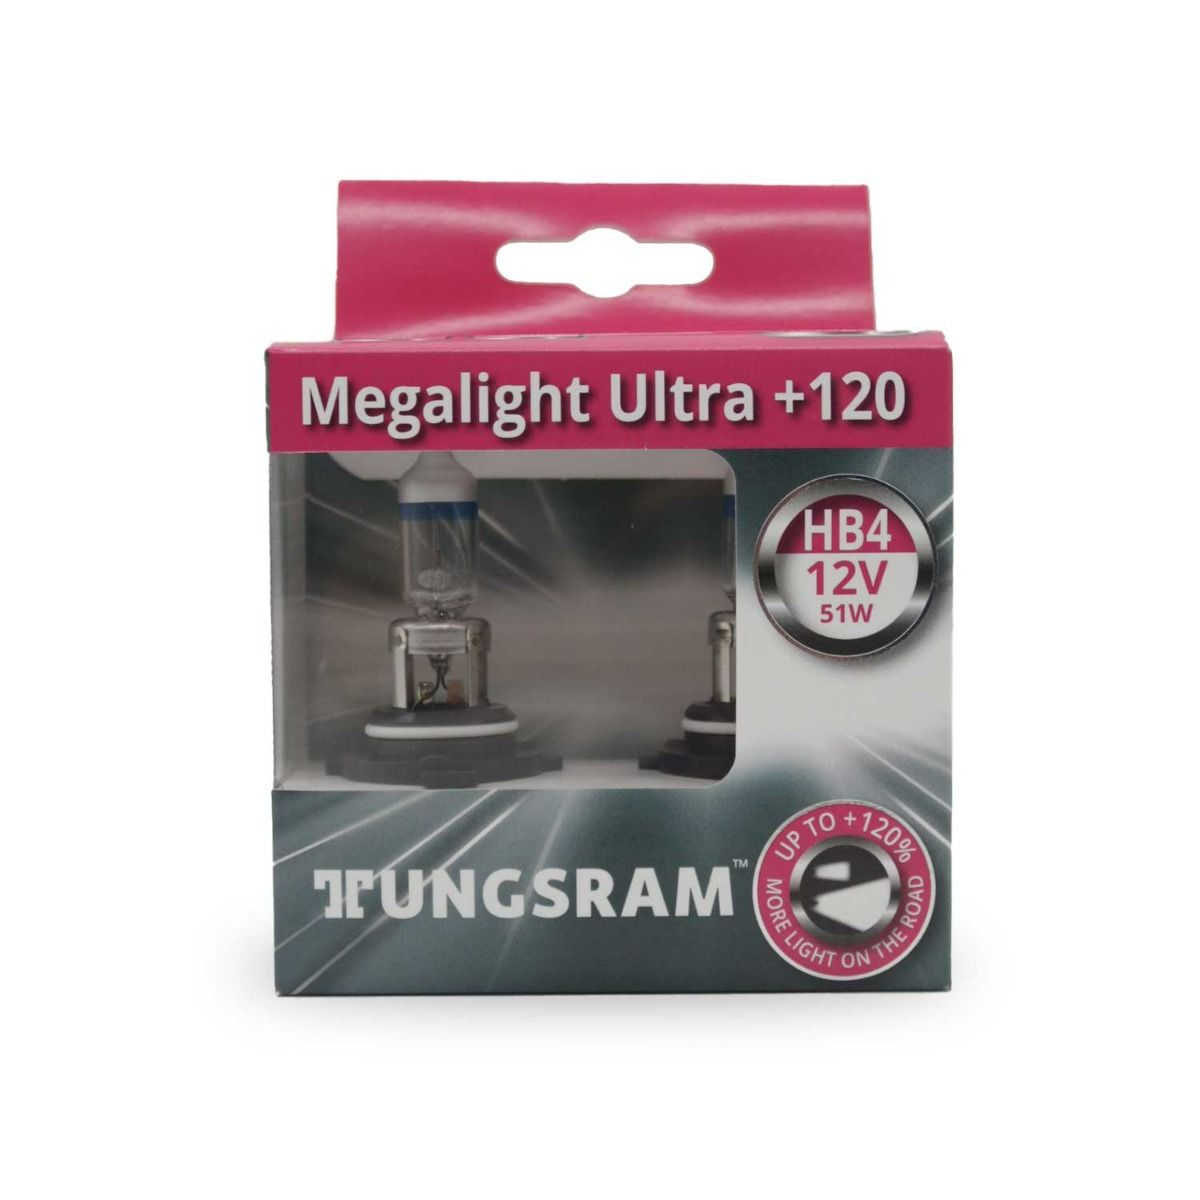 Tungsram Megalight Ultra +120 Halogen Headlight Lamp, HB4/9006SNU